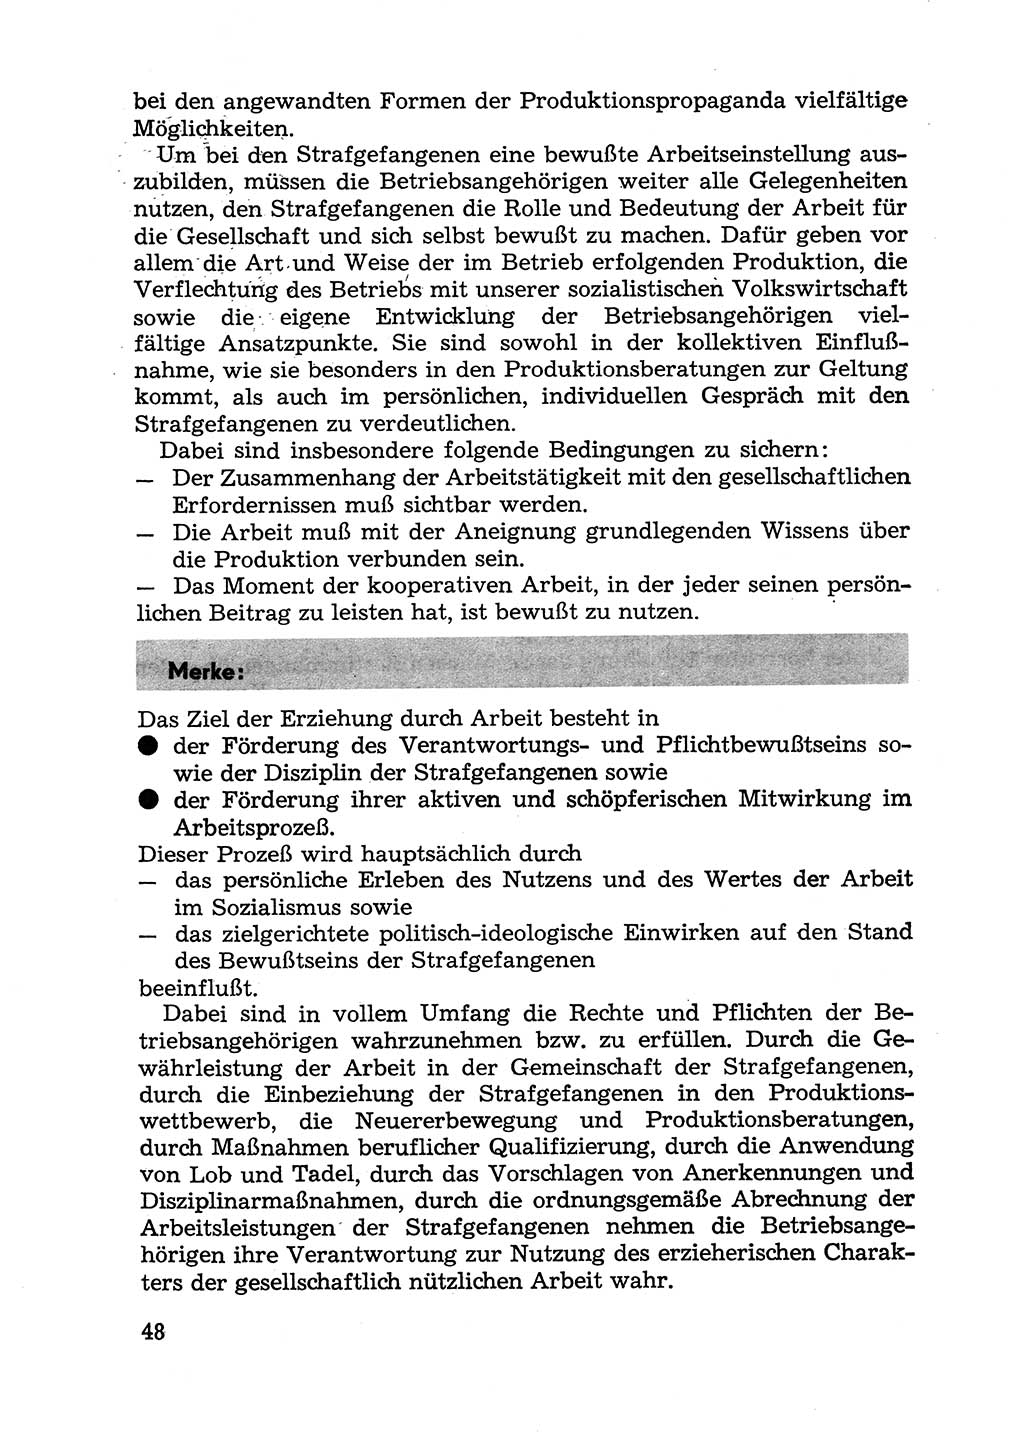 Handbuch für Betriebsangehörige, Abteilung Strafvollzug (SV) [Ministerium des Innern (MdI) Deutsche Demokratische Republik (DDR)] 1981, Seite 48 (Hb. BA Abt. SV MdI DDR 1981, S. 48)